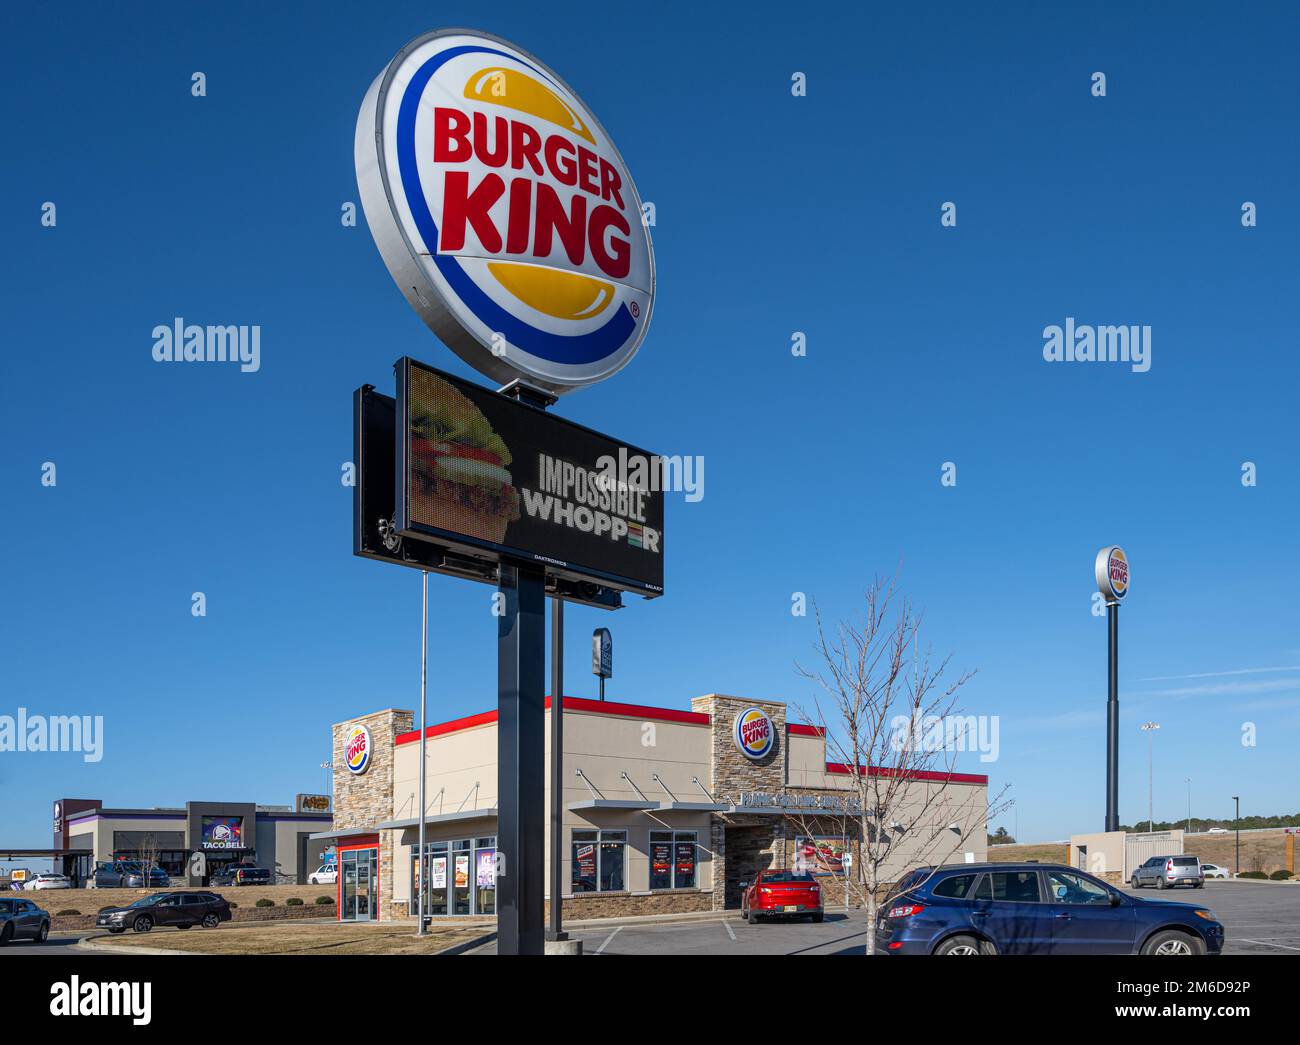 Burger King Fast Food Restaurant mit Beschilderung und Impossible Whopper, einer pflanzlichen Fleischalternative zu seinem berühmten Whopper Burger. (USA) Stockfoto